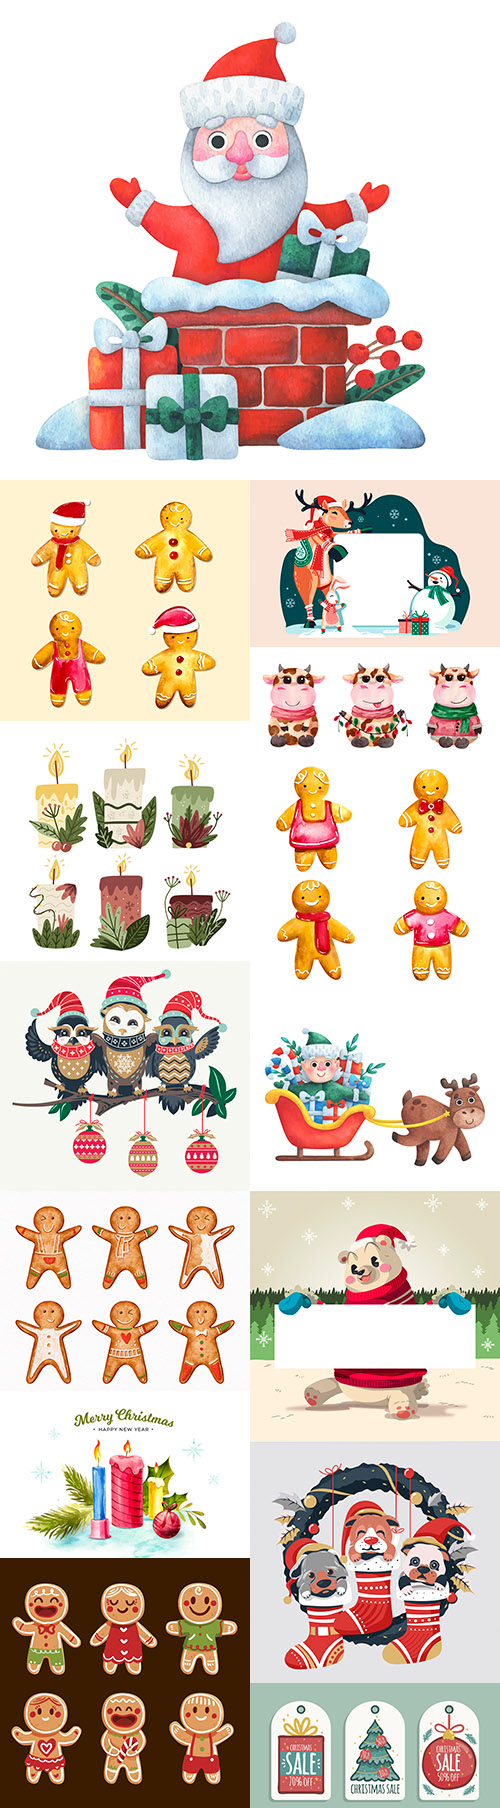 Fun Santa and Christmas characters cartoon illustration
